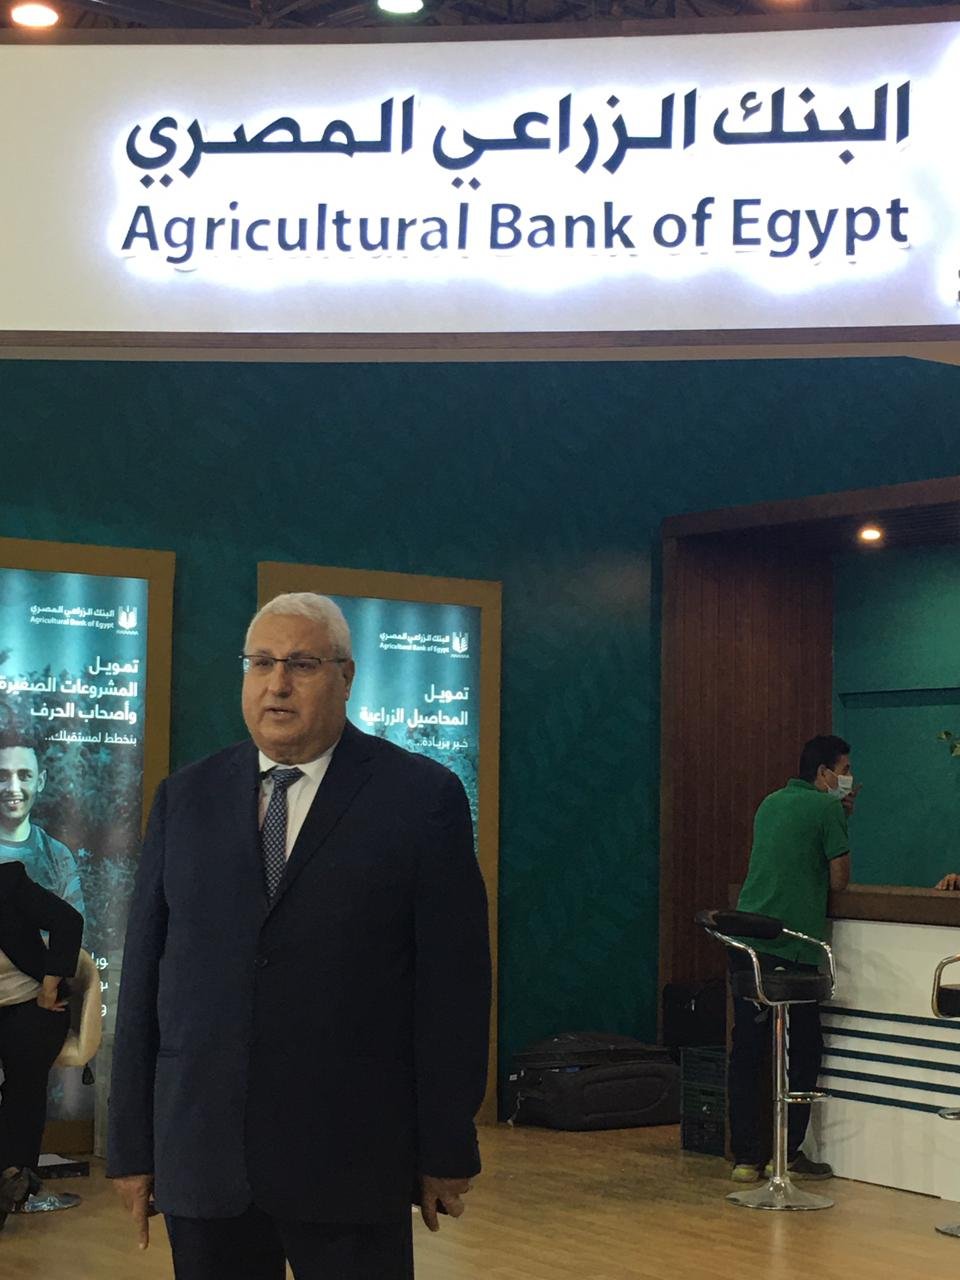 سامى عبد الصادق: البنك الزراعى يمد مبادرة تسوية مديونيات المتعثرين